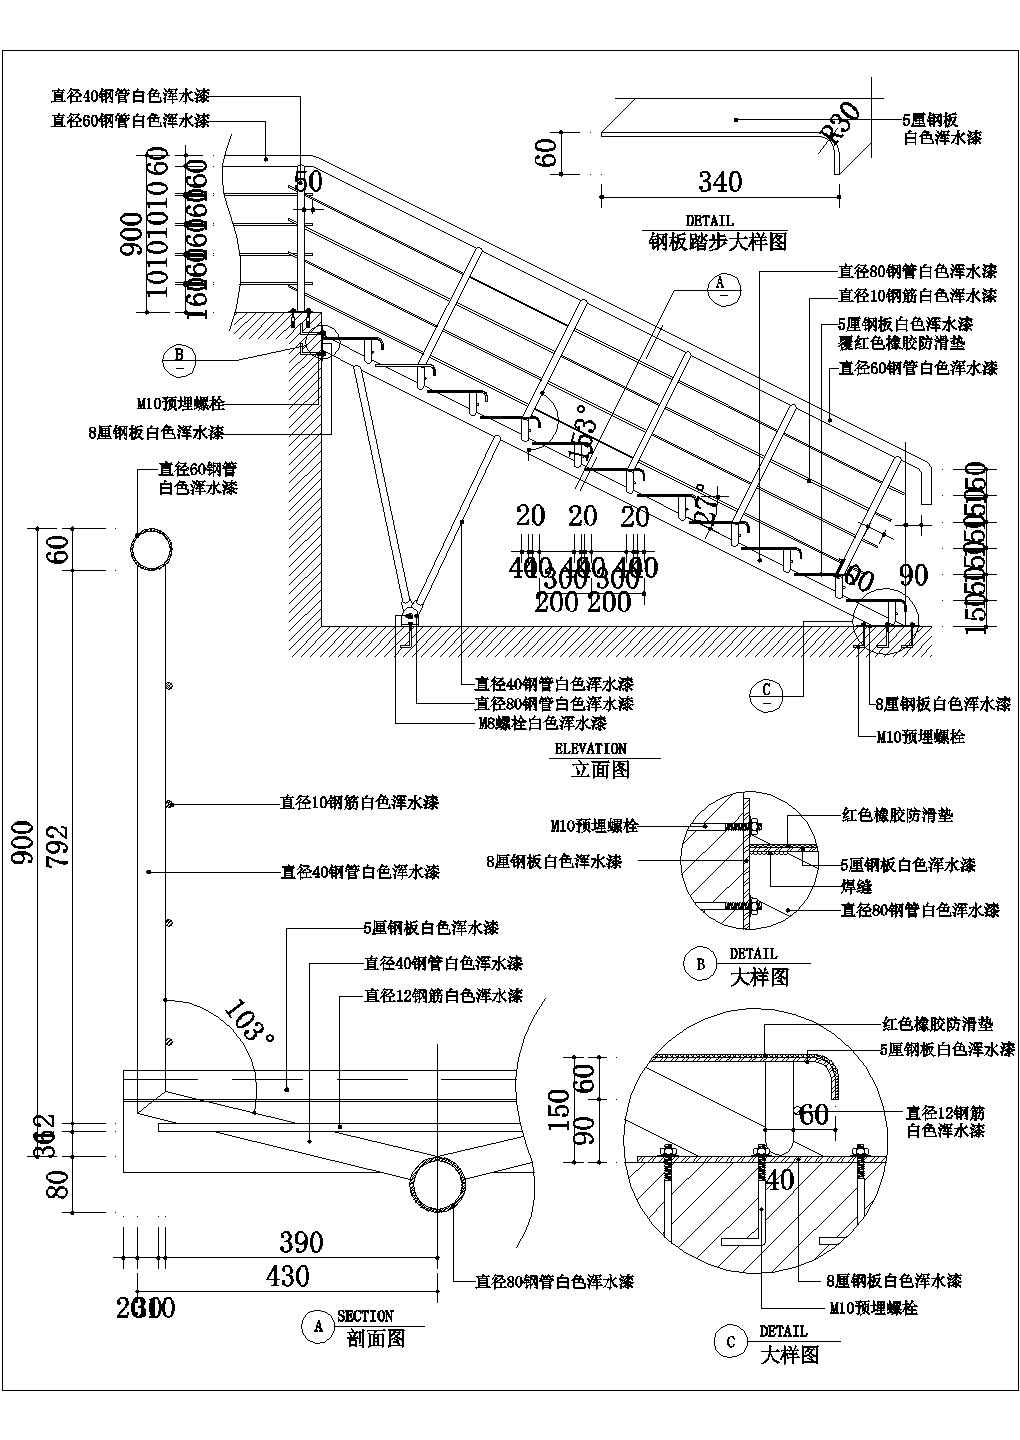 河北省某地区楼梯扶手施工图9套设计图